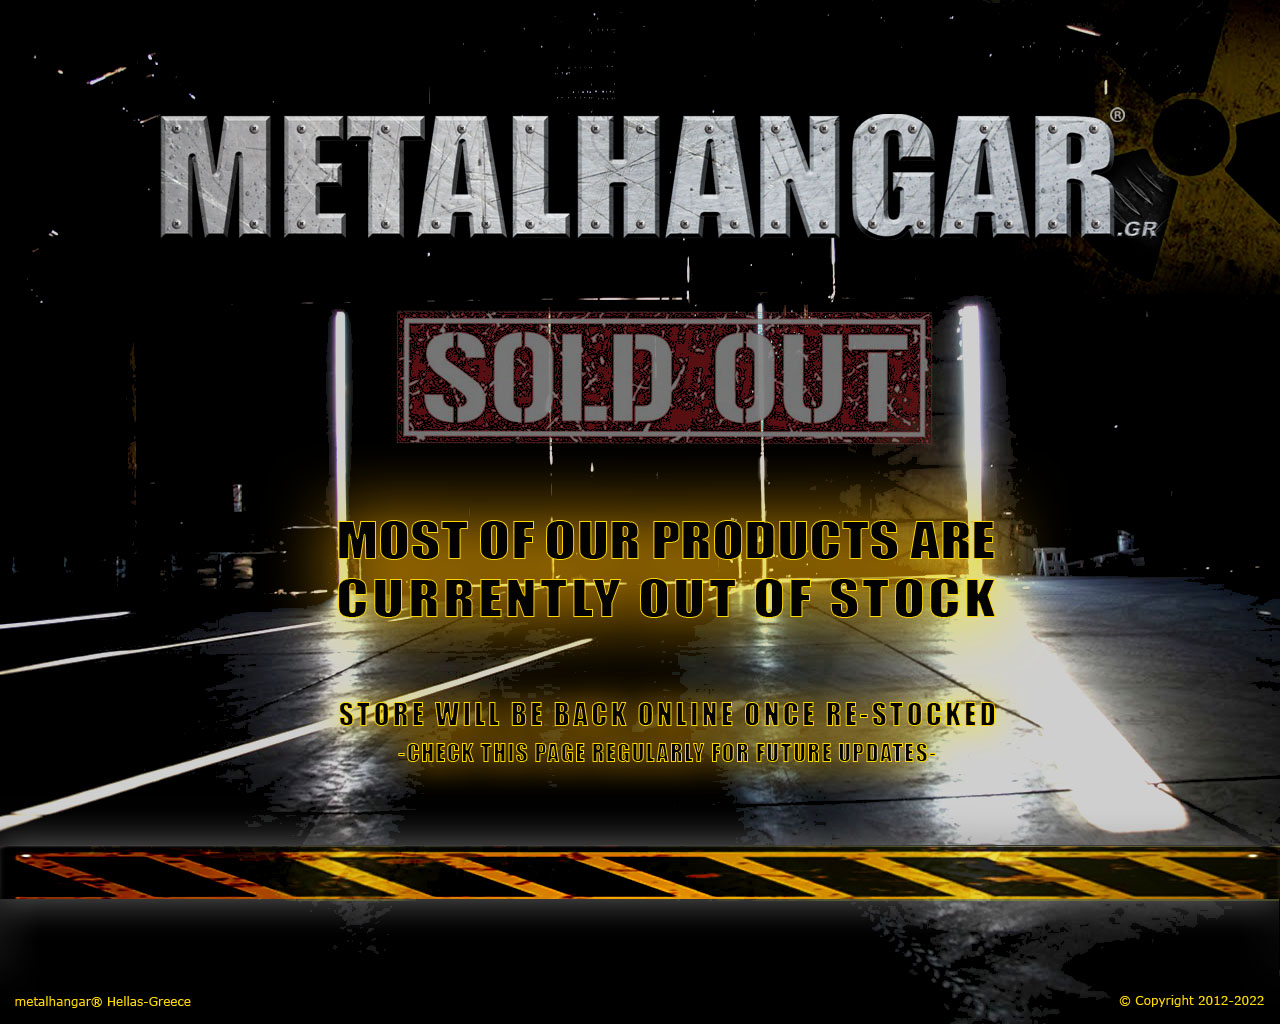 Metalhangar sold out